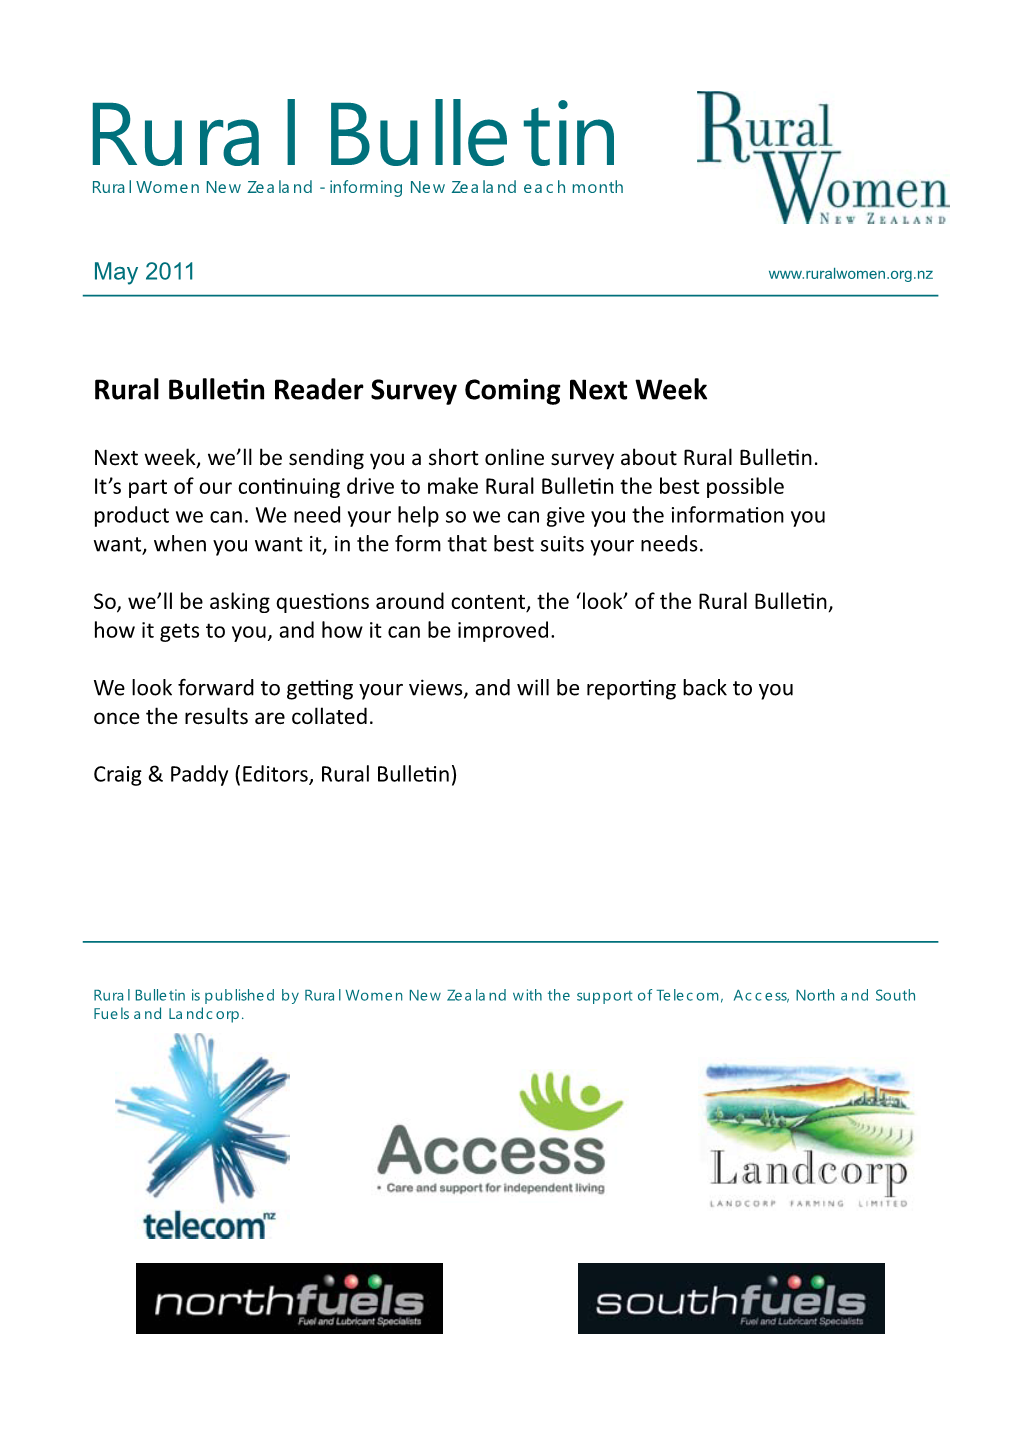 Rural Bulletin Rural Women New Zealand - Informing New Zealand Each Month